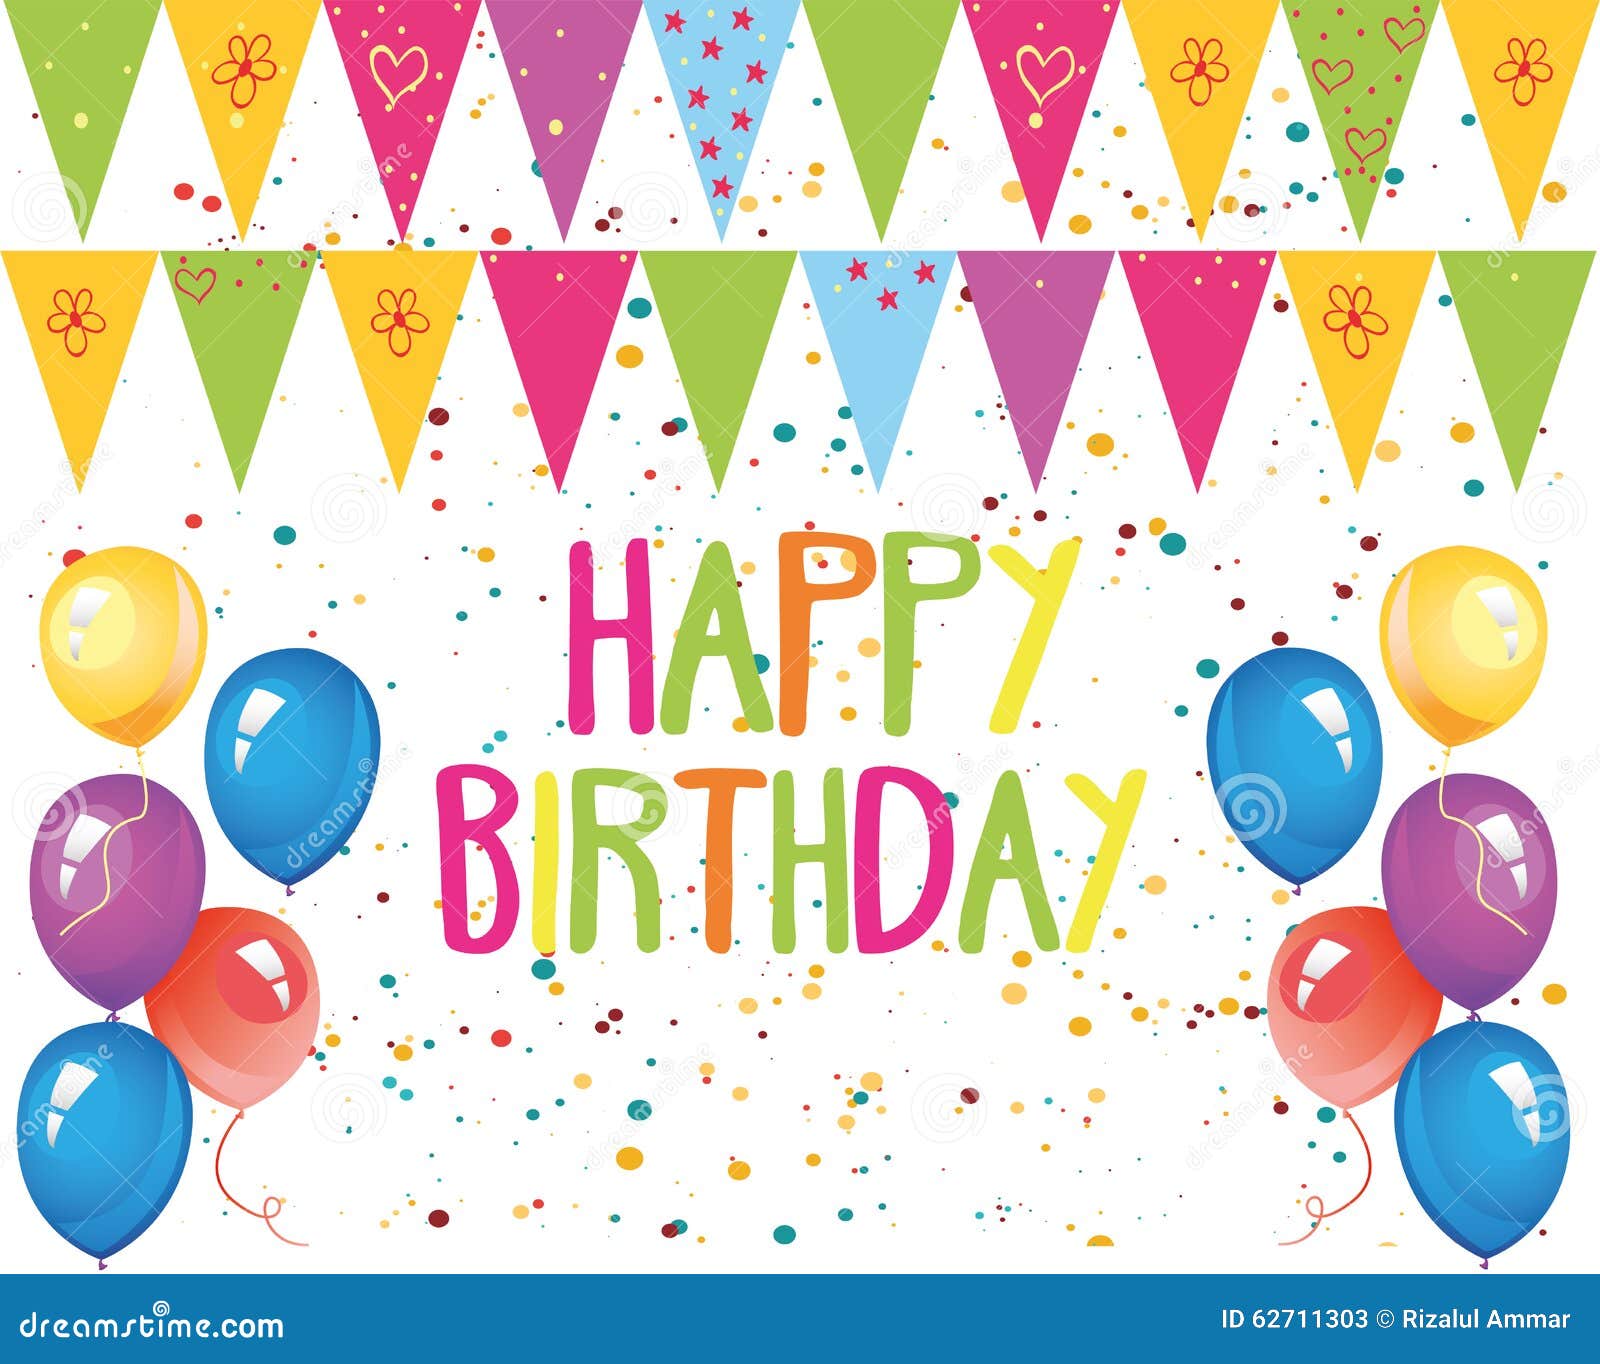 Happy Birthday  Decoration  Stock Vector Image 62711303